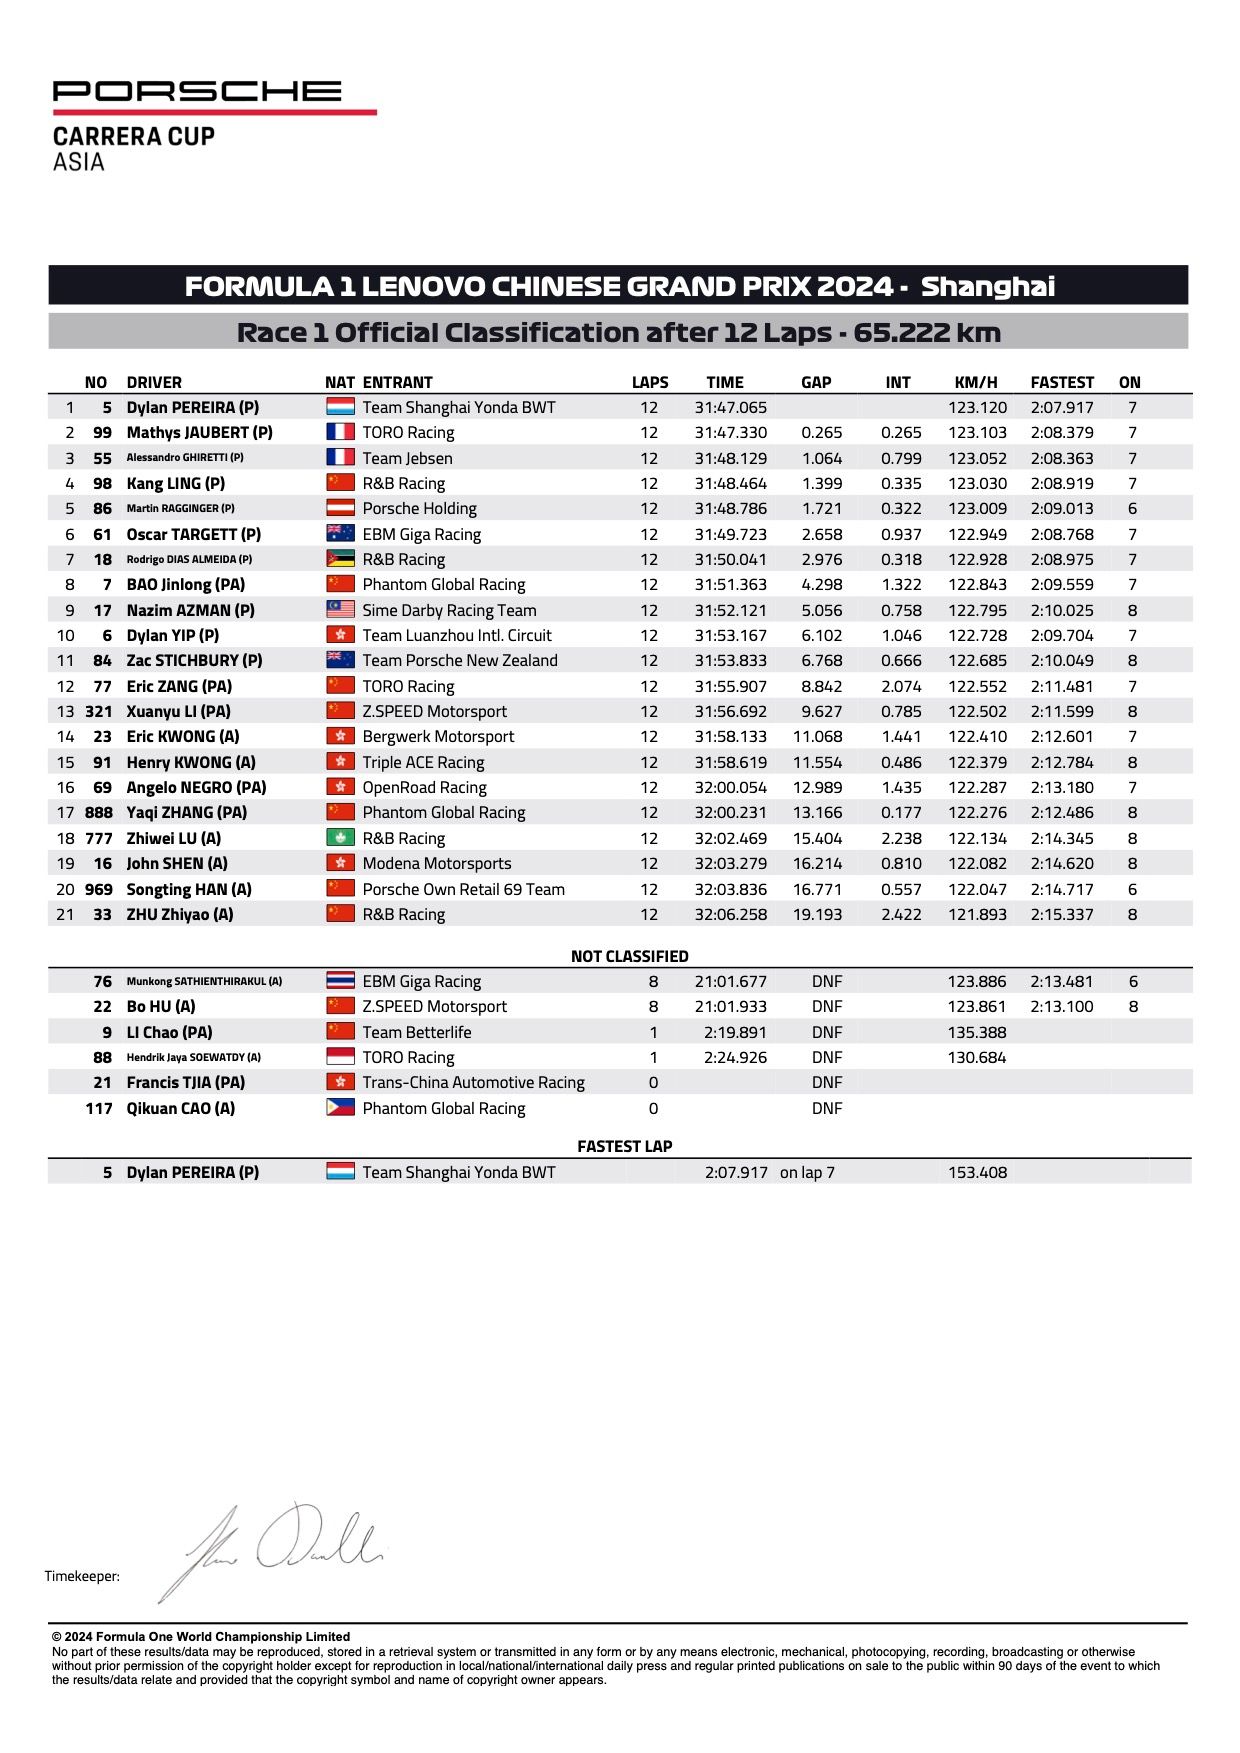 ผลการแข่งขัน Porsche Carrera Cup Asia 2024 เซี่ยงไฮ้ รอบ 1&2 รอบที่ 1 อย่างเป็นทางการ